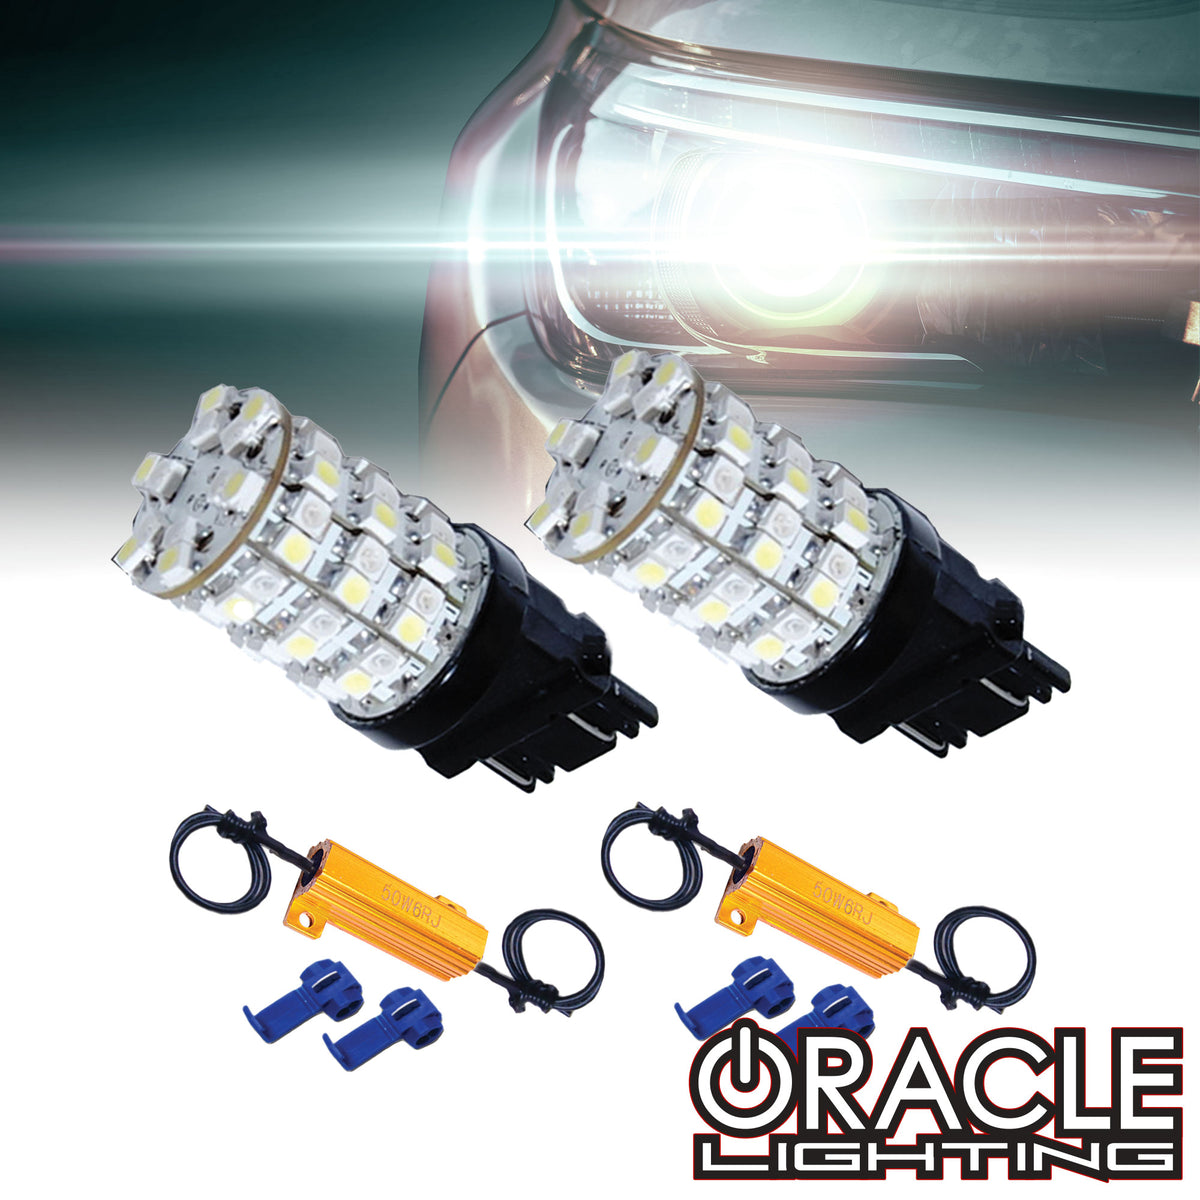 Oracle Lighting 5003005 Ampoule de clignotant – LED 3157 12 LED